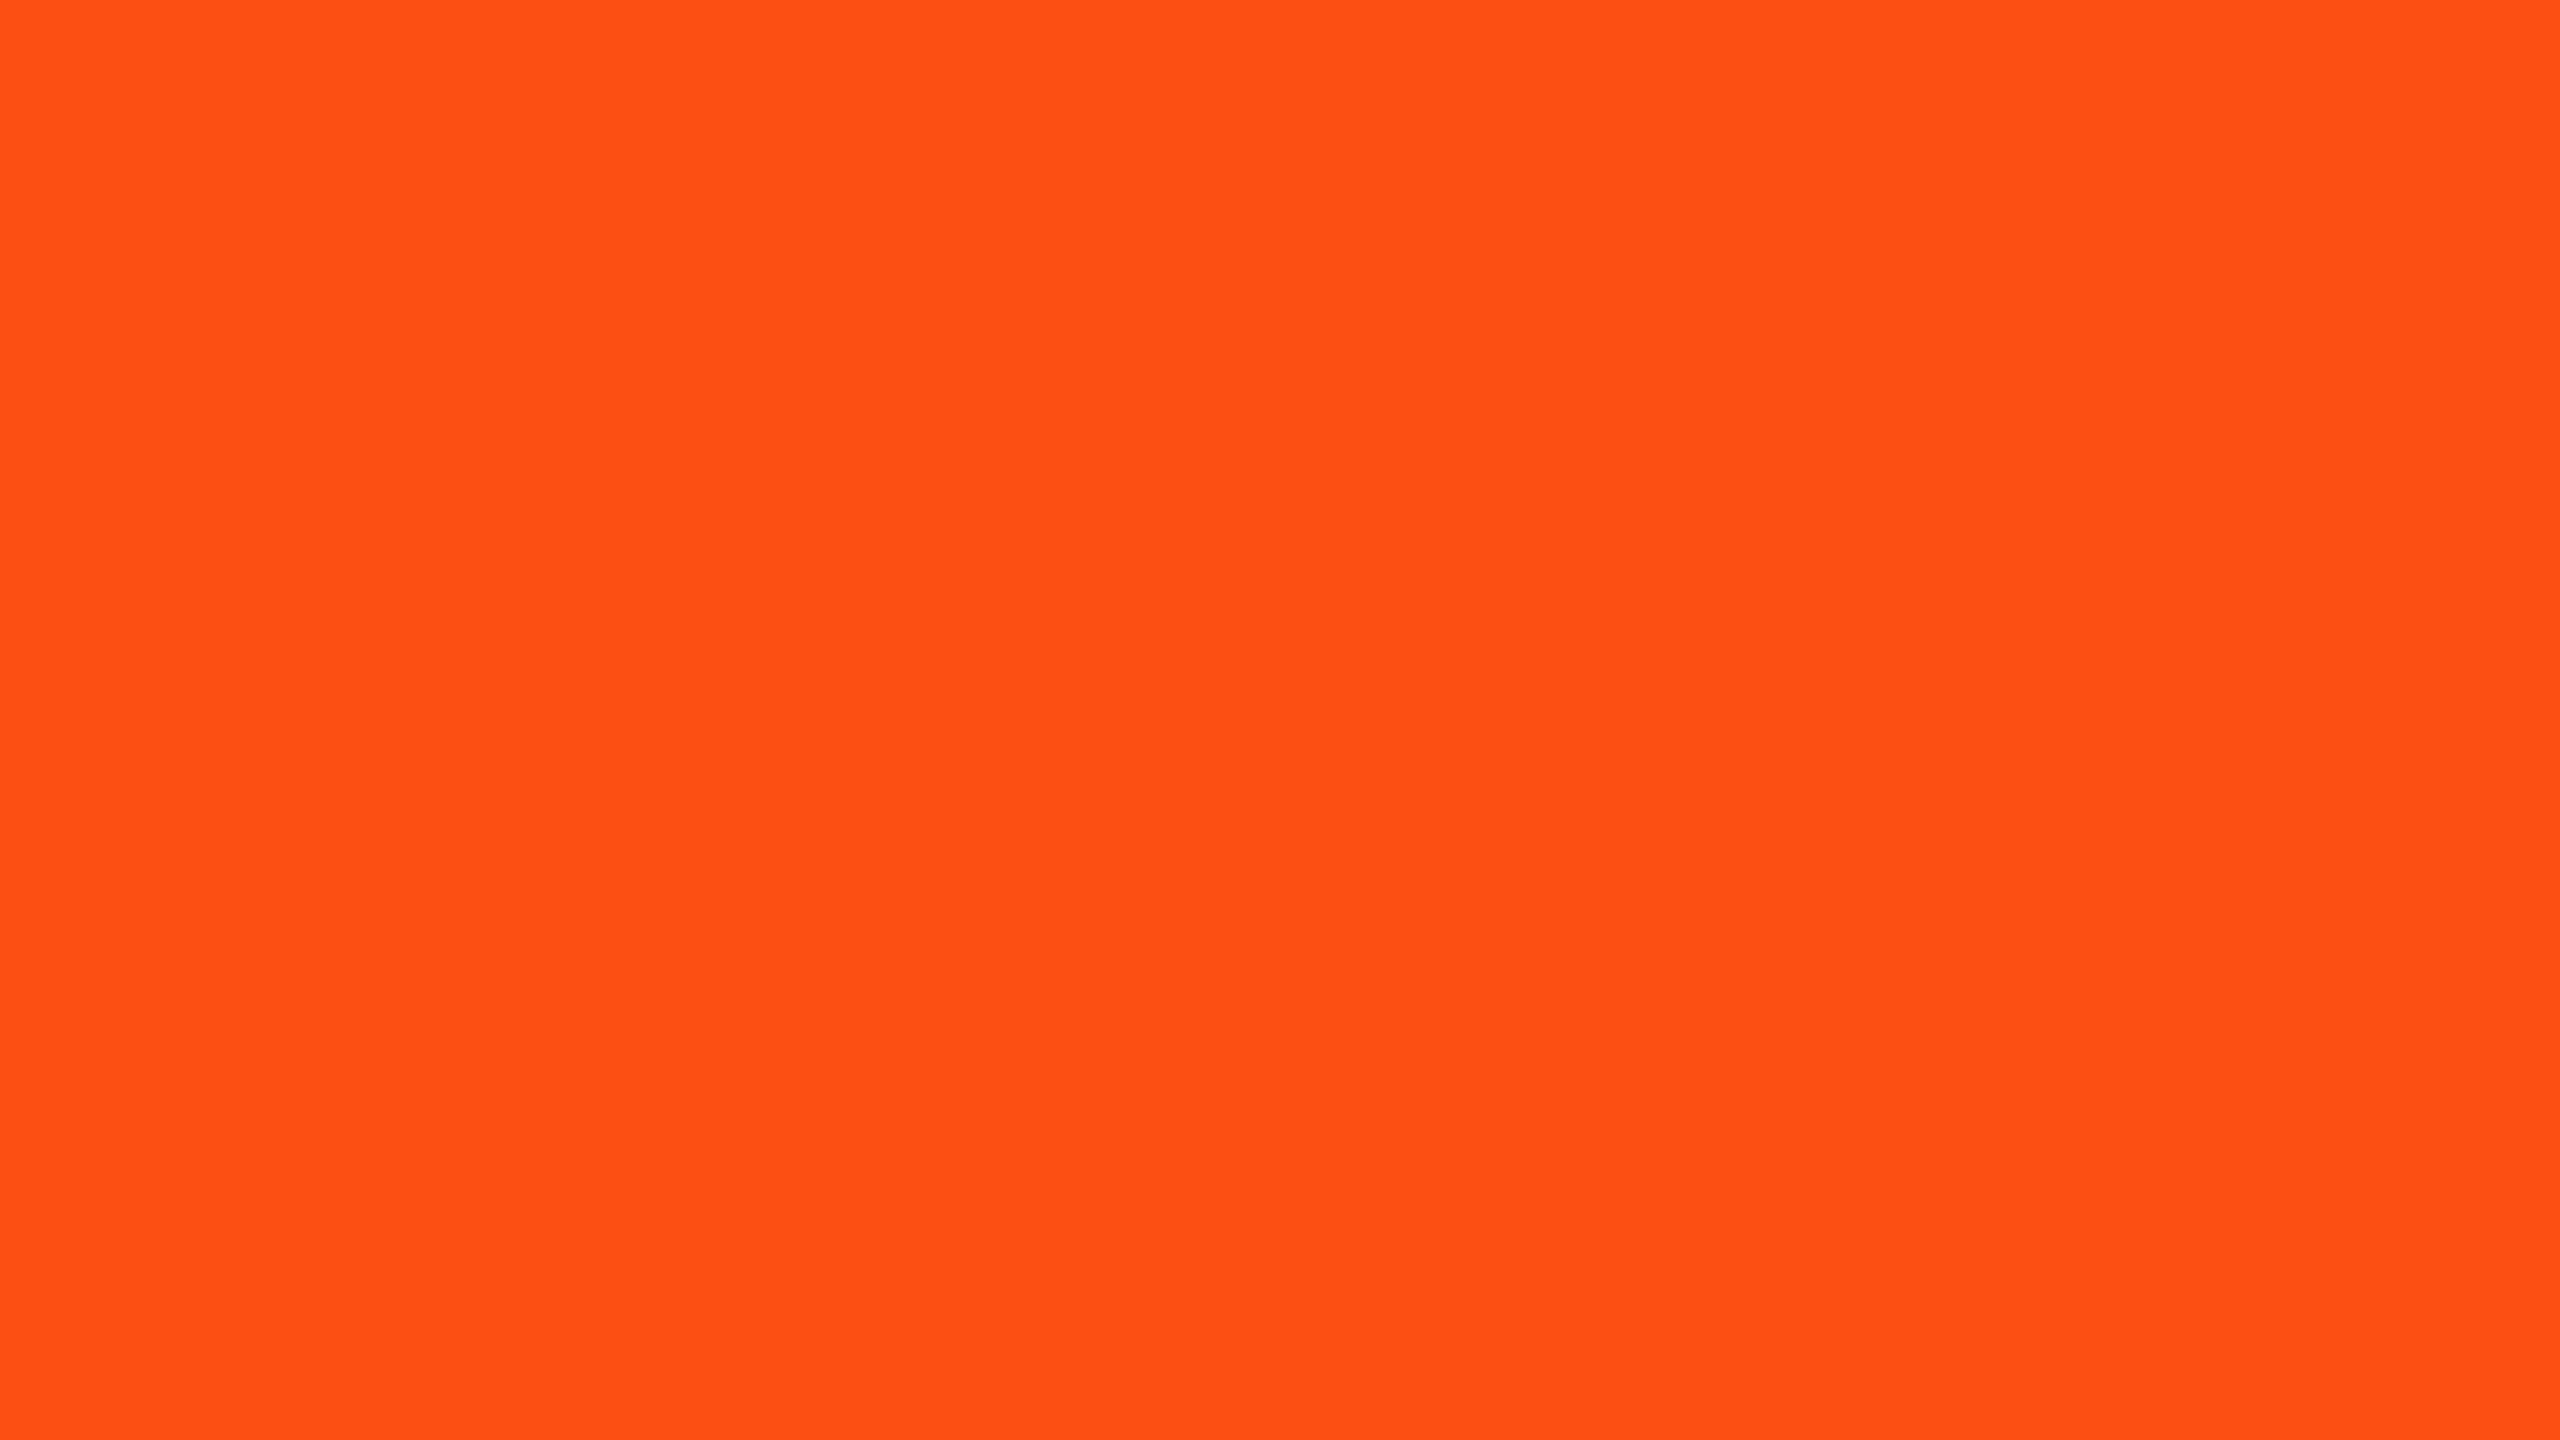 Màu cam là biểu tượng của sự sôi động và năng lượng tích cực. Hình nền màu cam này sẽ mang đến sự mạnh mẽ và can đảm cho người đang sử dụng nó. Chắc chắn rằng bạn sẽ thích các tùy chọn hình nền màu cam này.